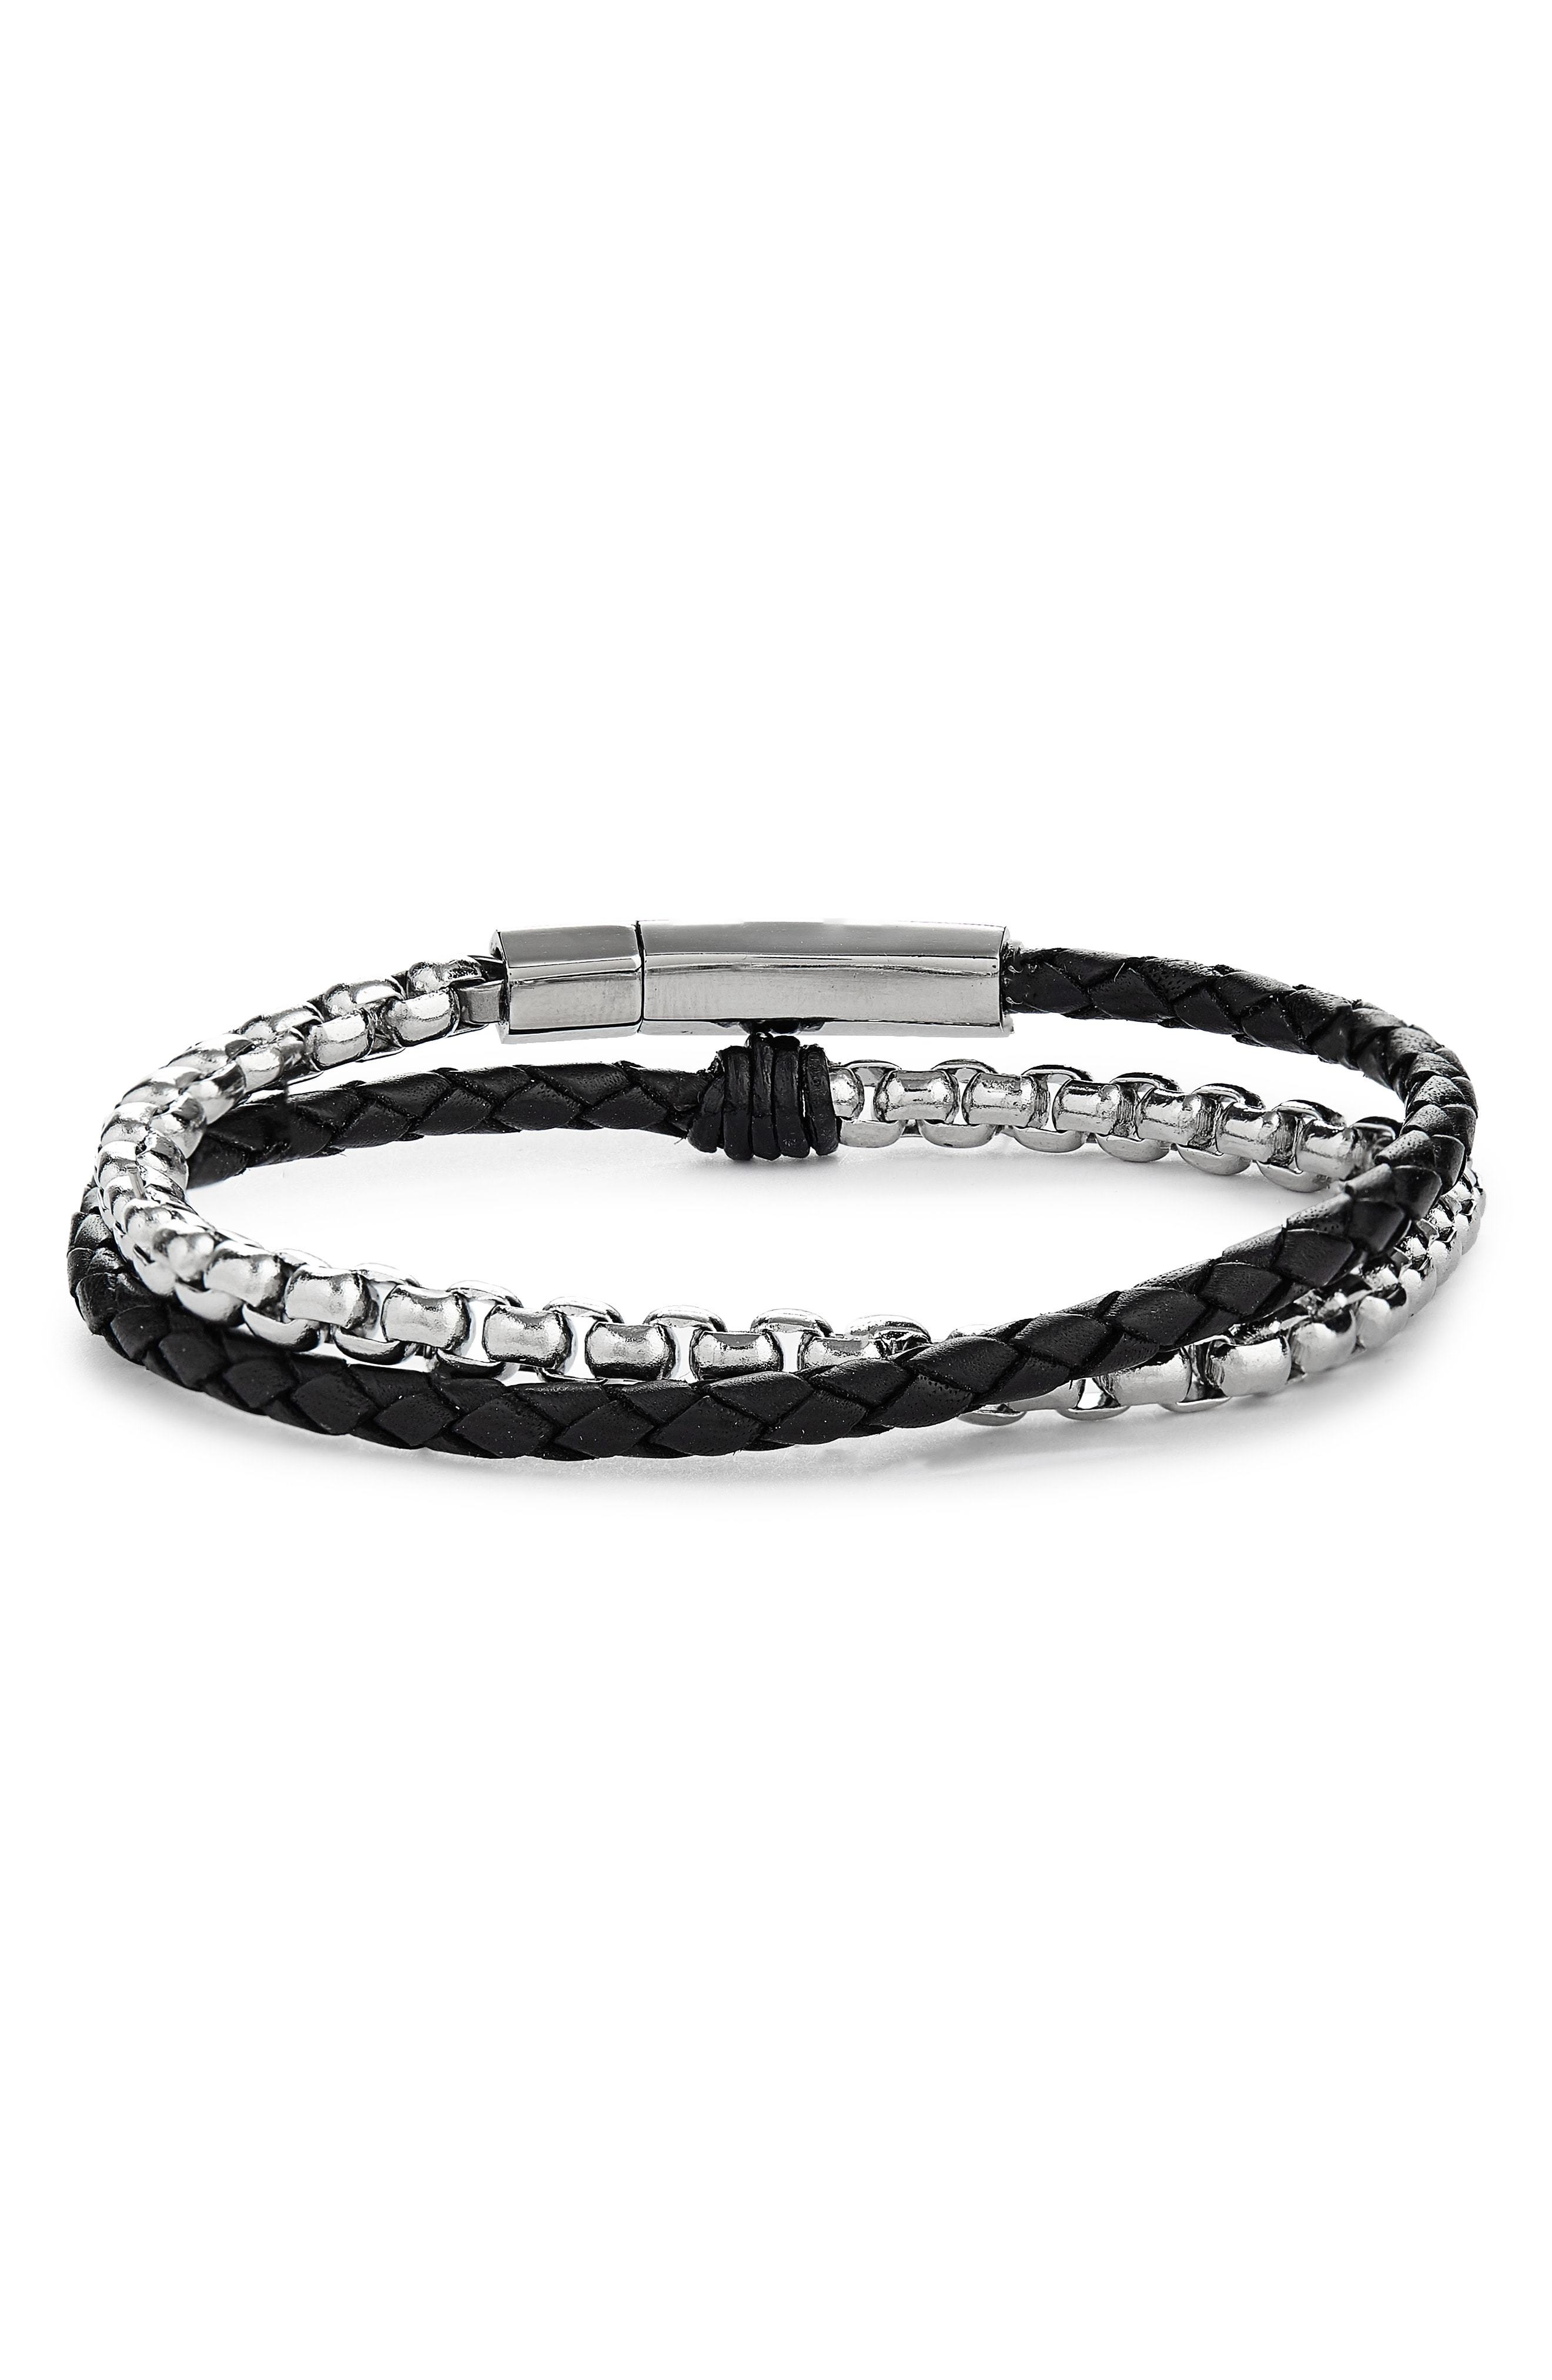 Jonas Studio Braided Leather Chain Double Wrap Bracelet, $175 